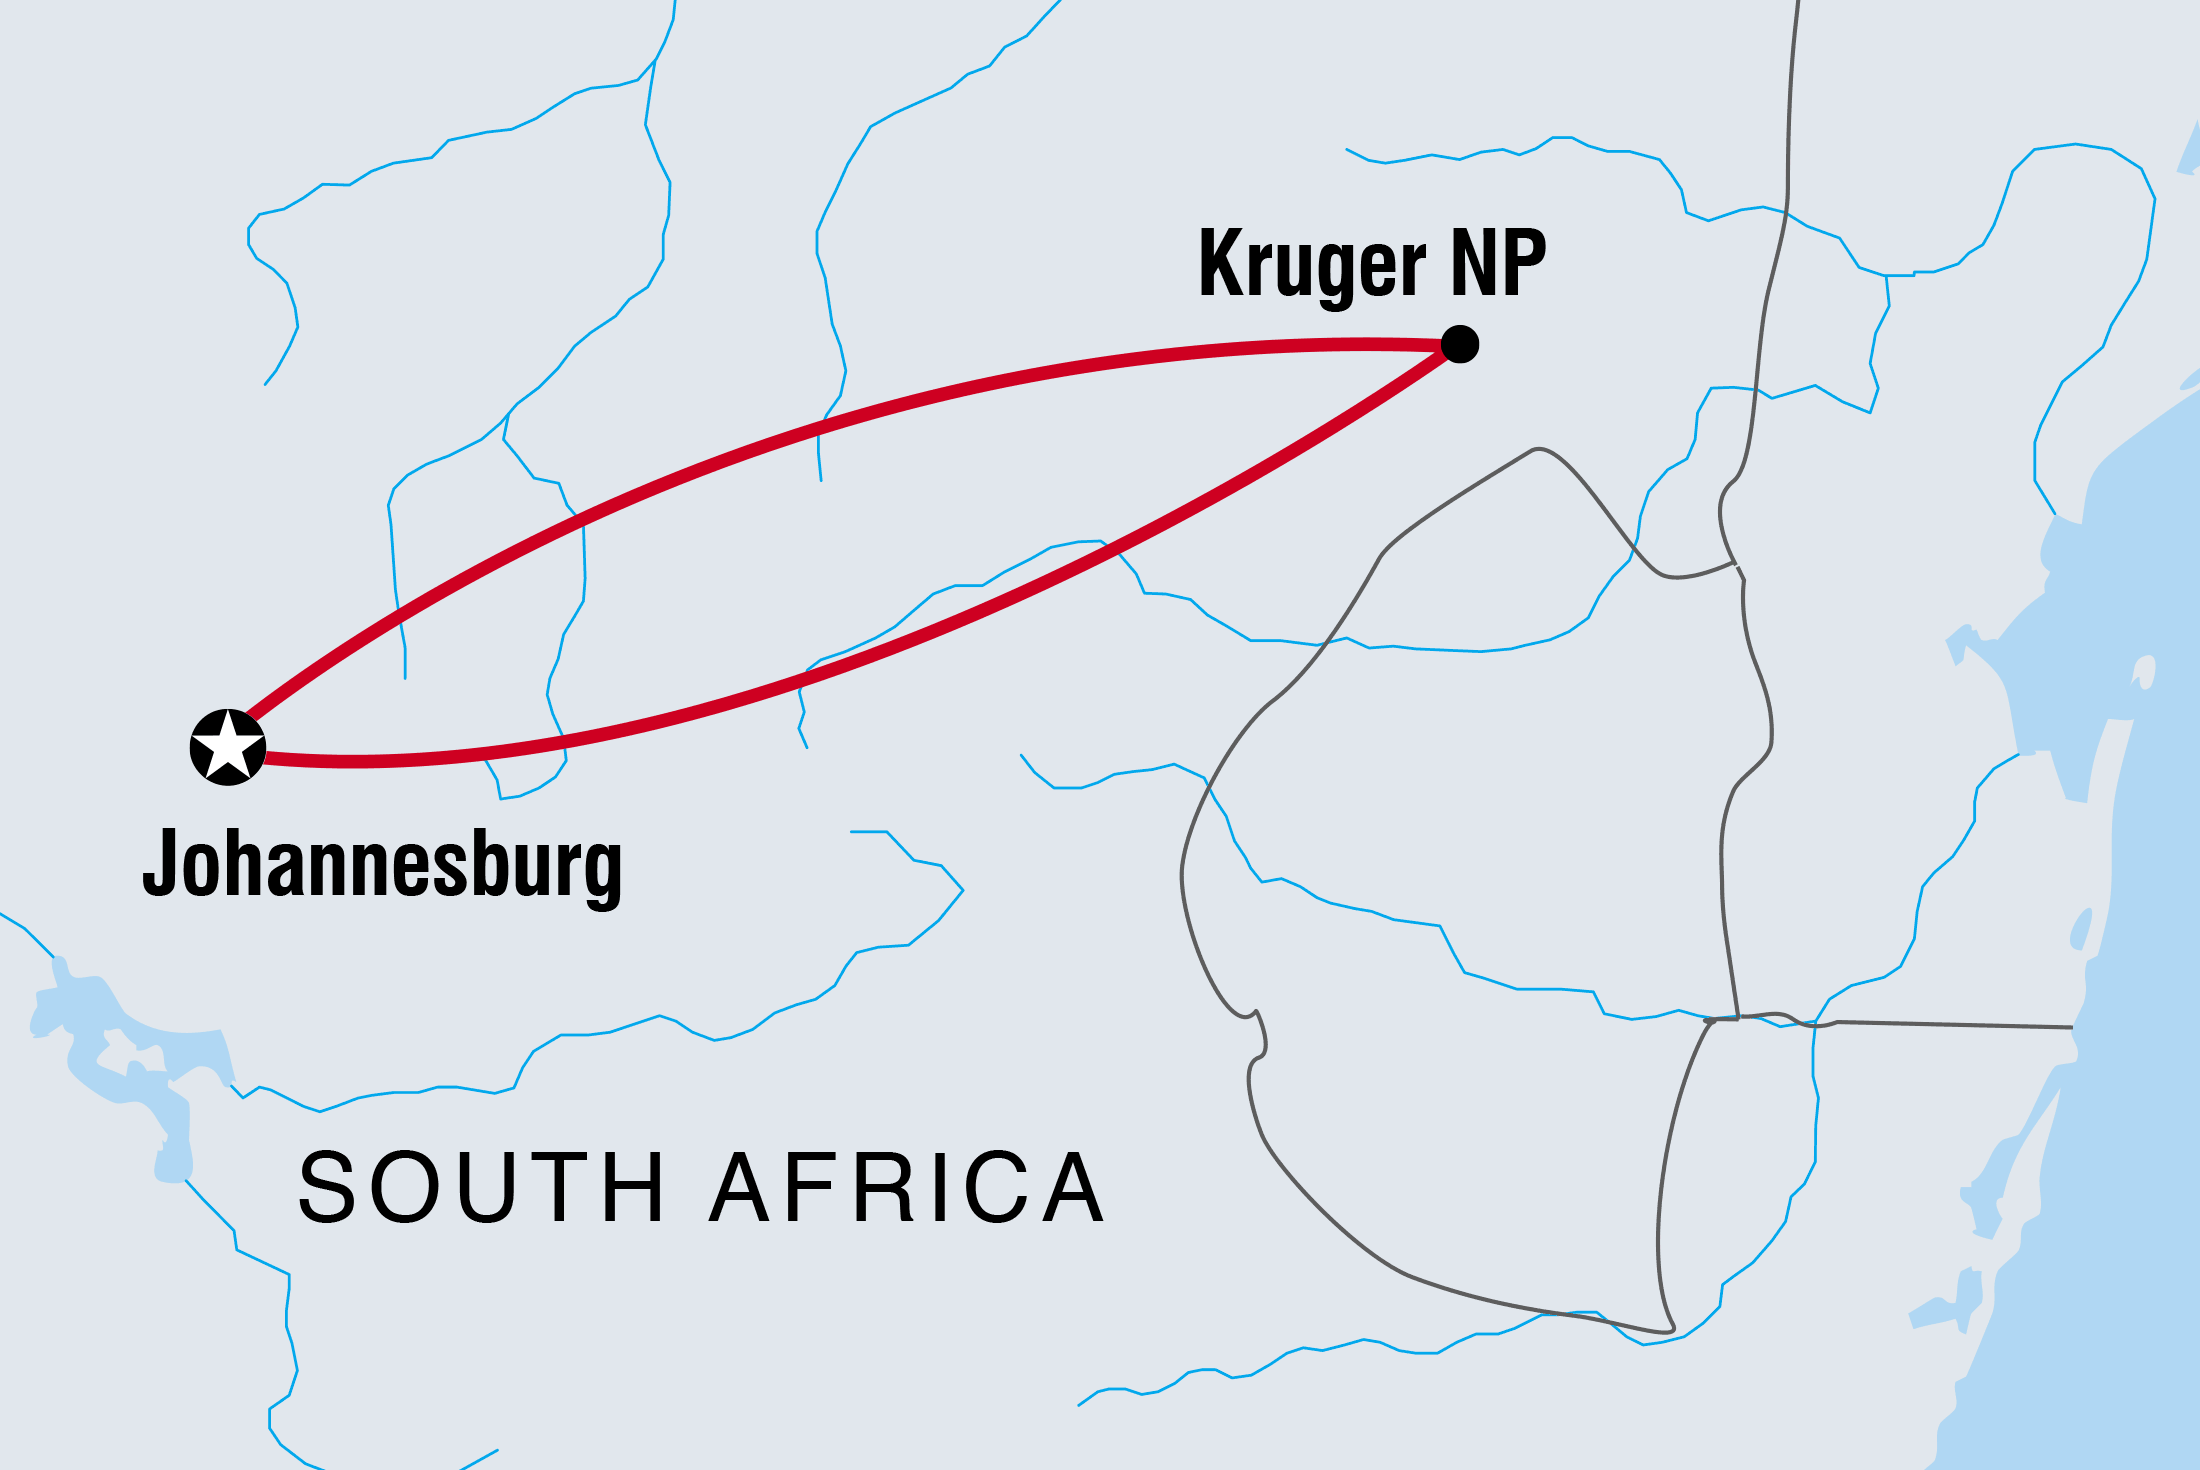 tourhub | Intrepid Travel | Wild Kruger Camping | Tour Map